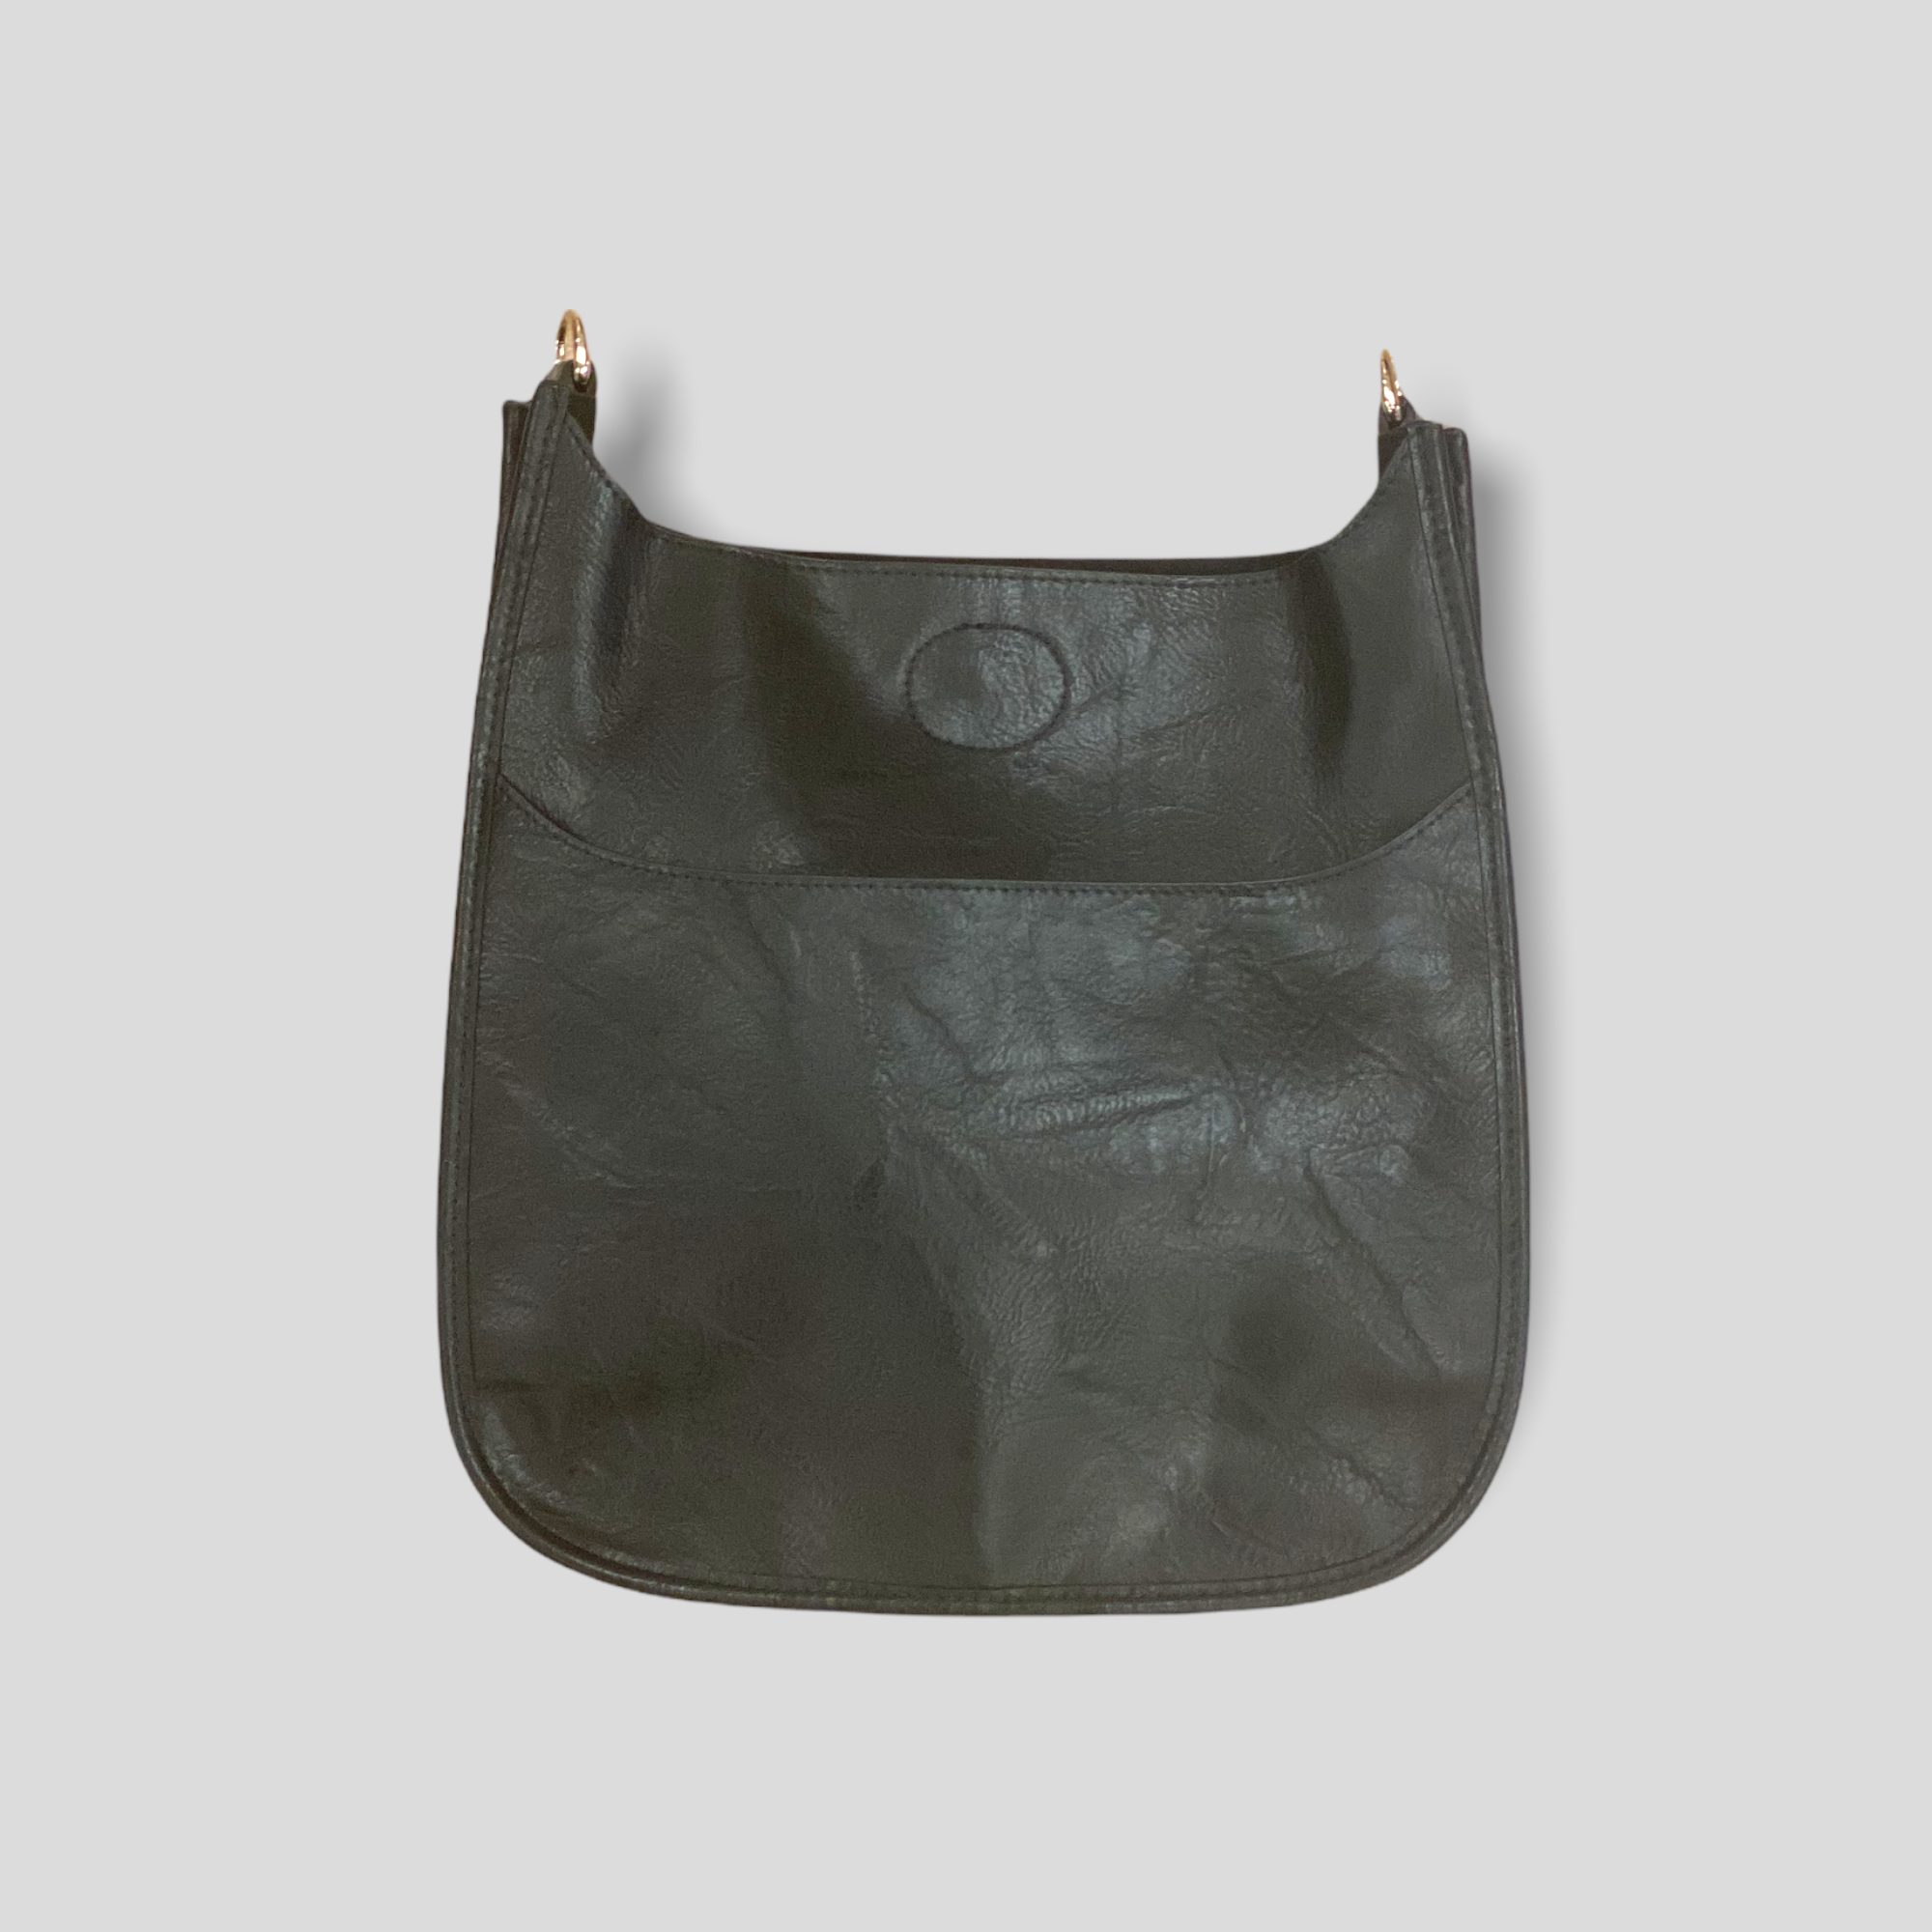 Ahdorned Black Vegan Leather Messenger Bag w/ Camouflage Strap - Her Hide  Out